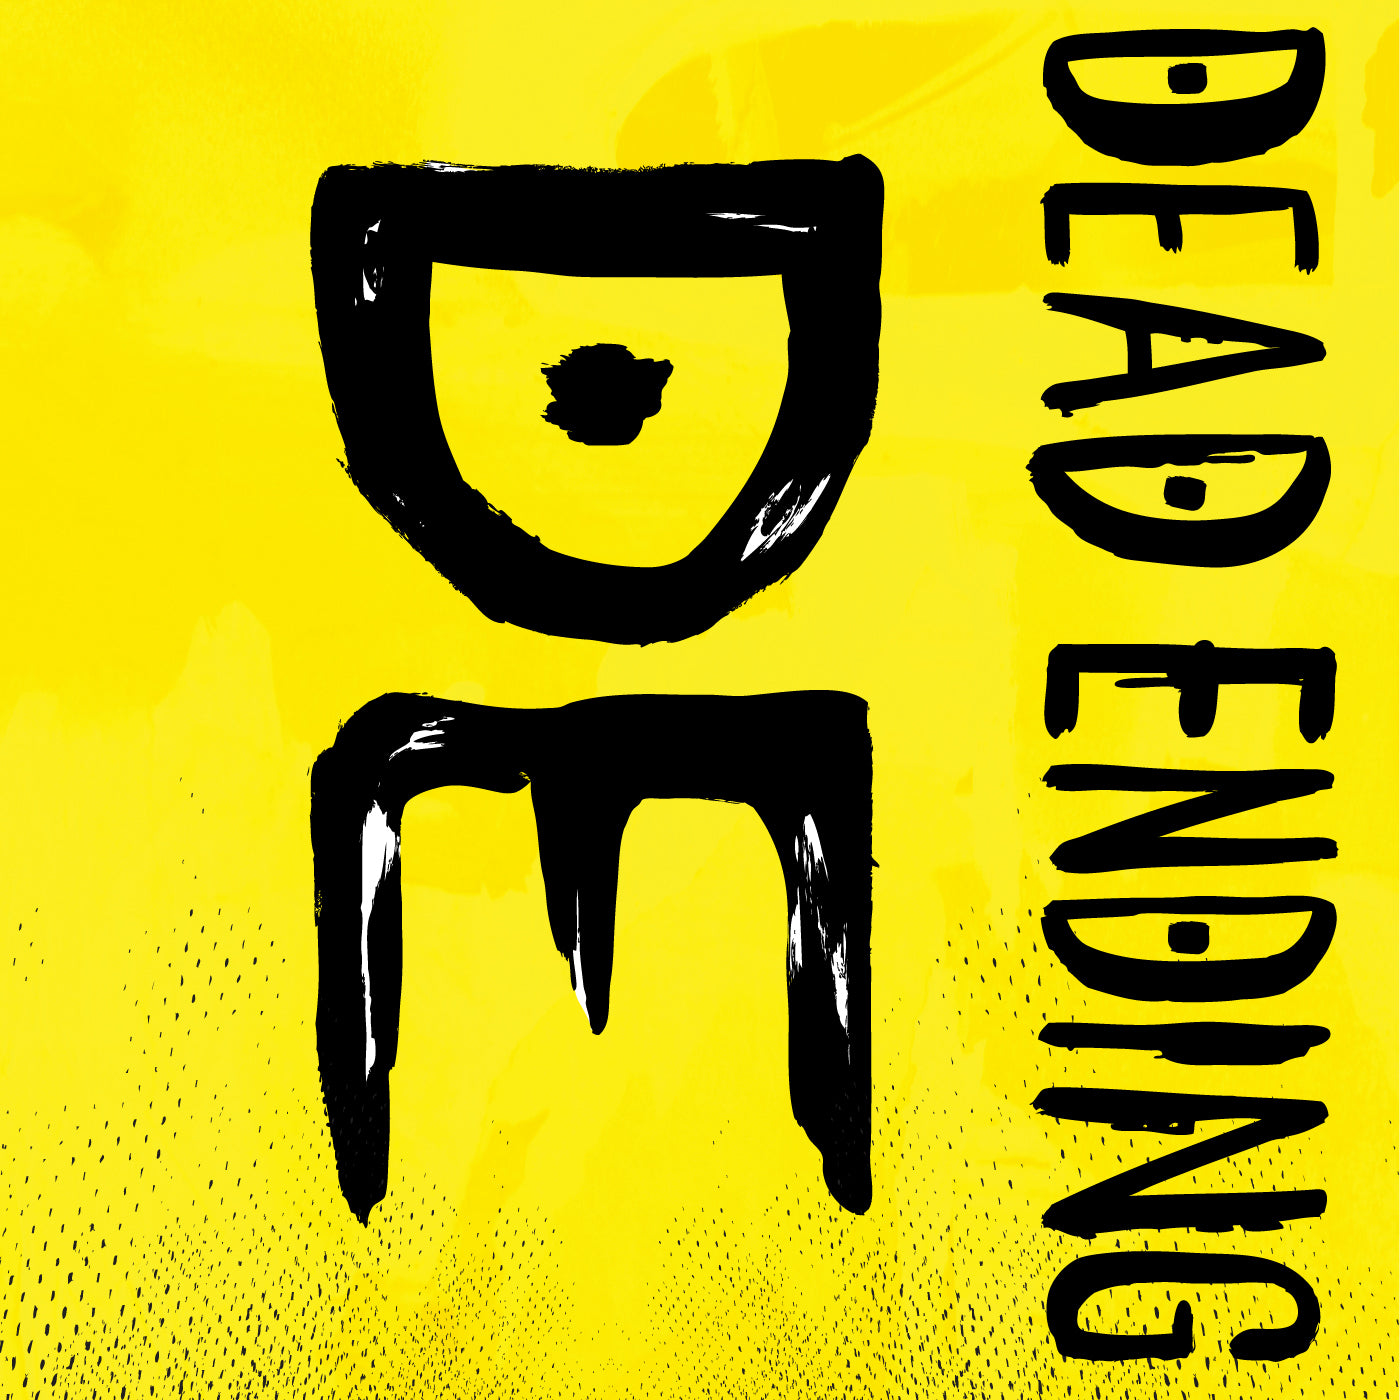 v441 - Dead Ending - "Dead Ending"